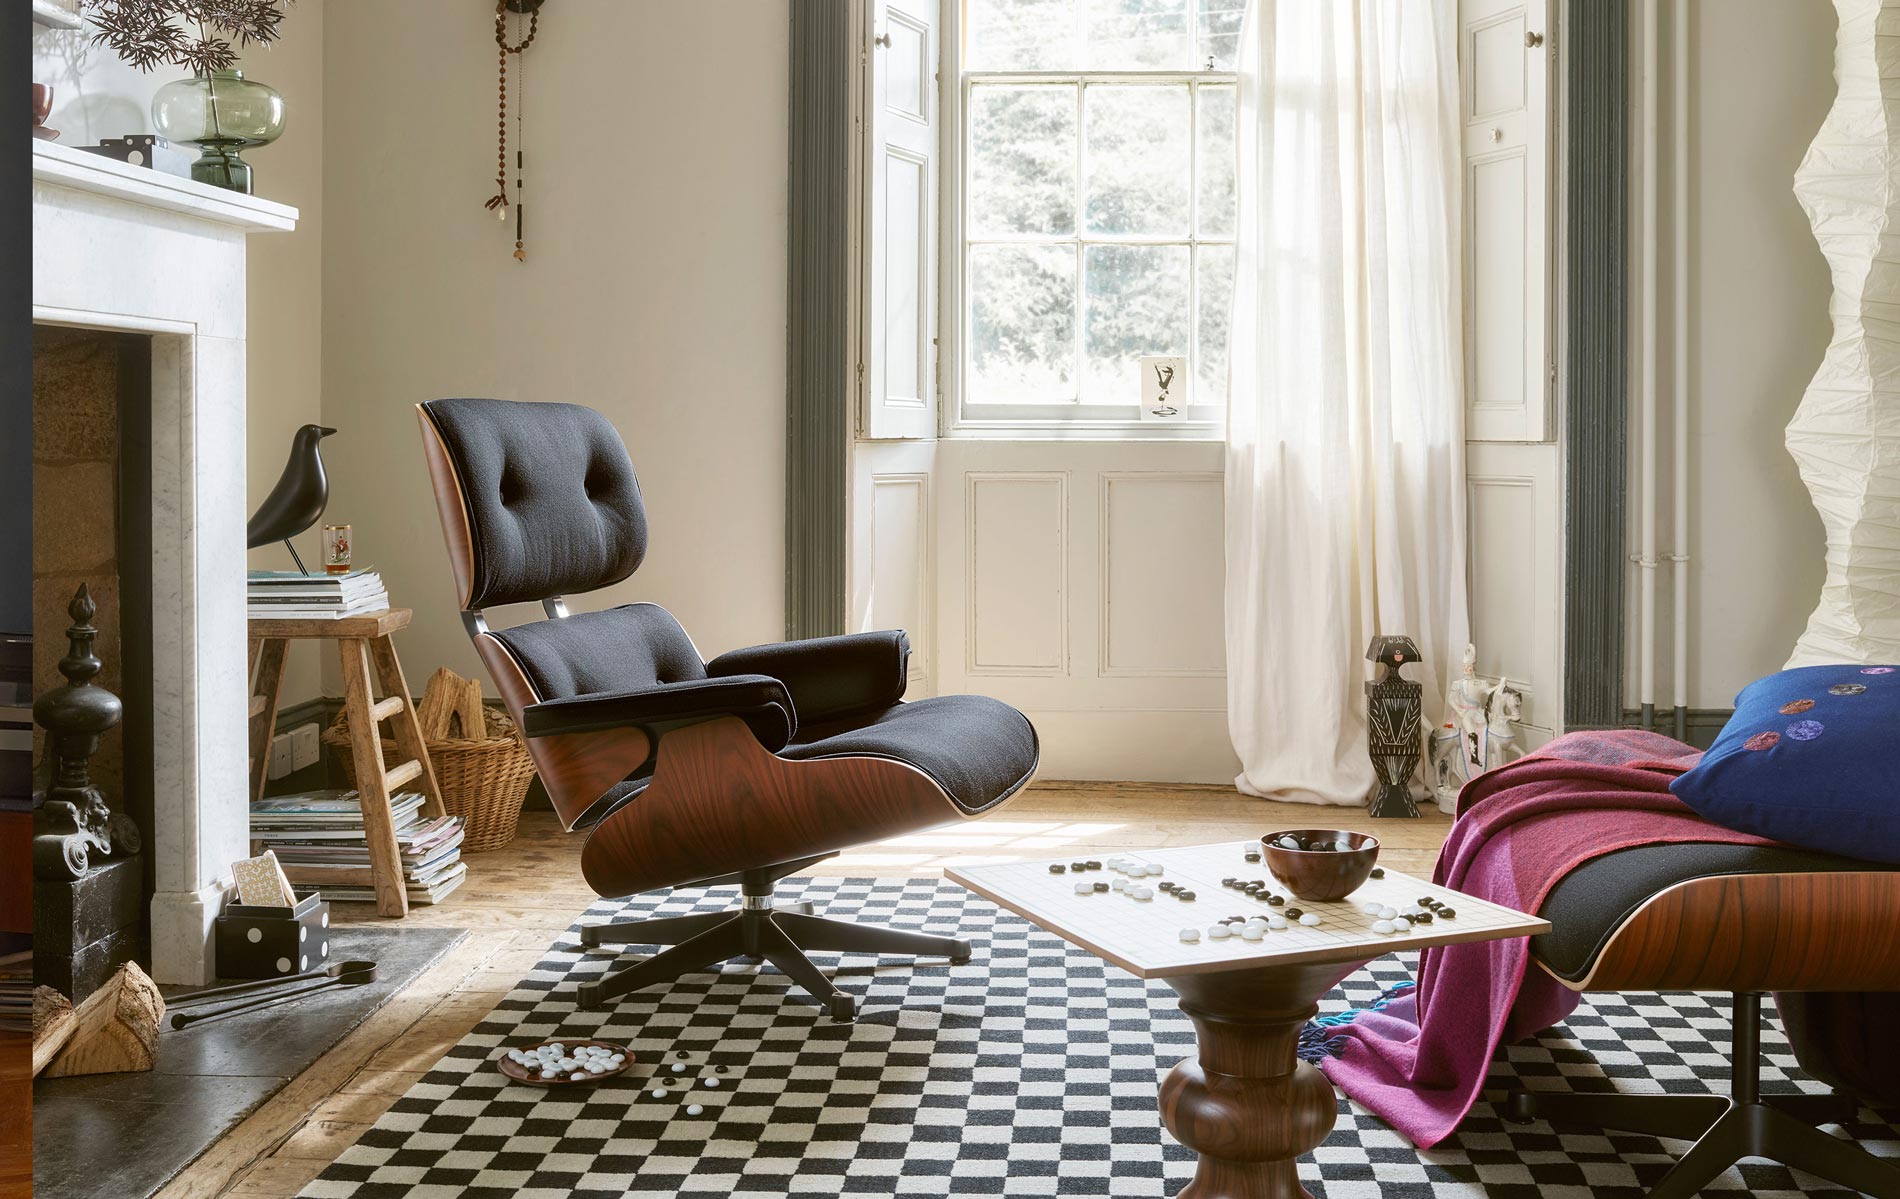 Vitra Sessel online kaufen in toller Auswahl bei LIVINGforme.de